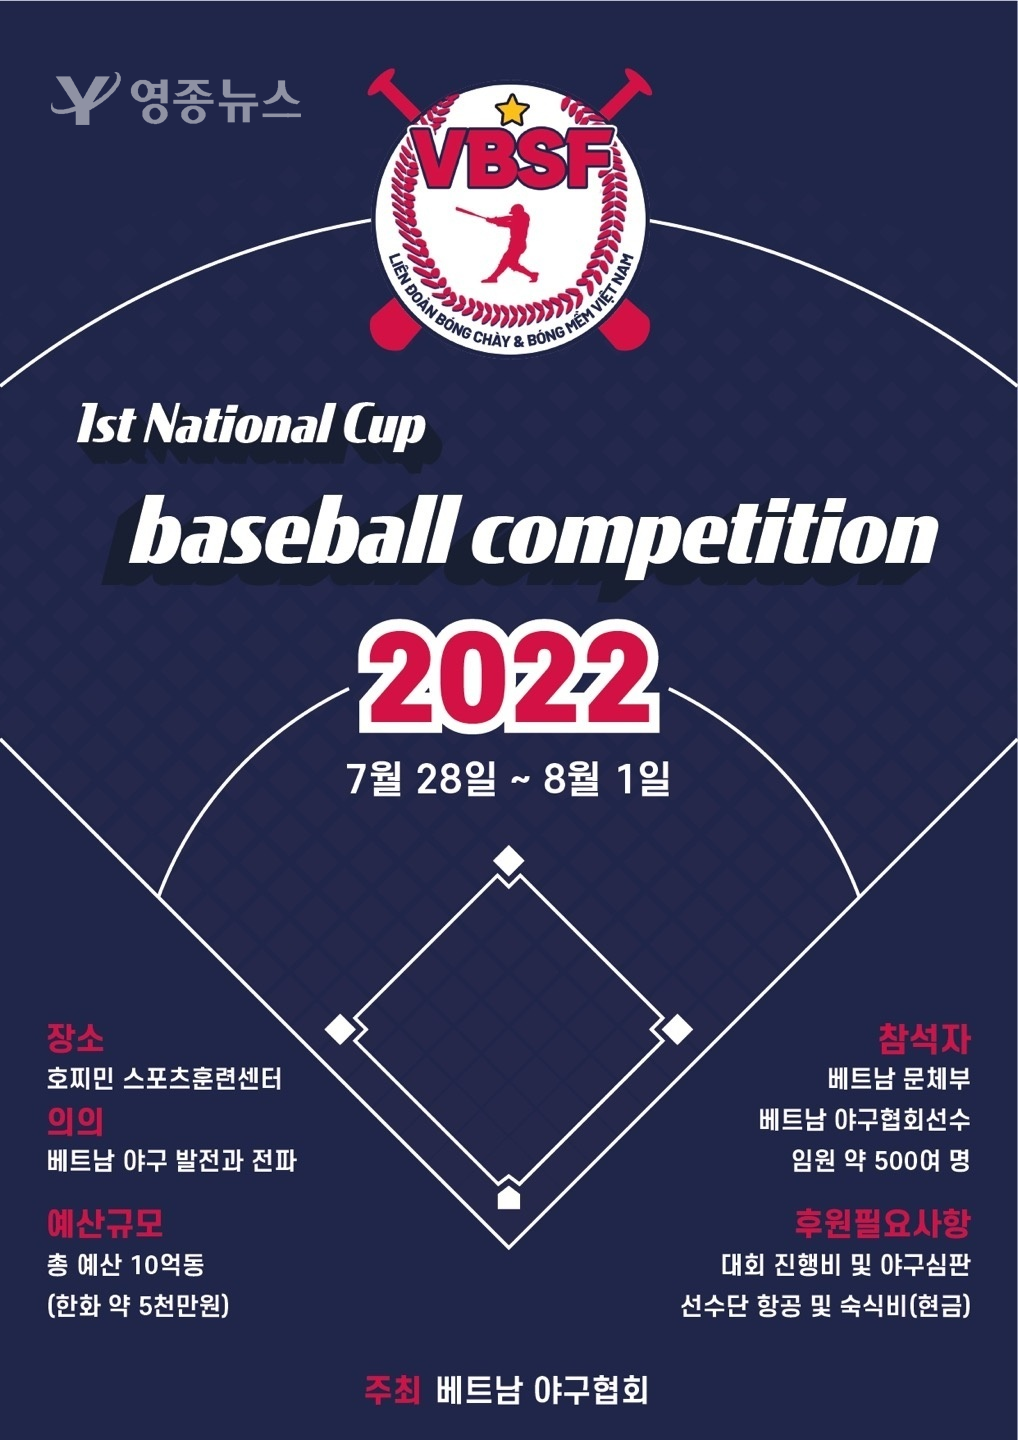 호찌민,제1회 내셔널컵(National Cup) 야구대회가 개최 - 베트남 최초로 내셔널컵 야구대회가 열린다